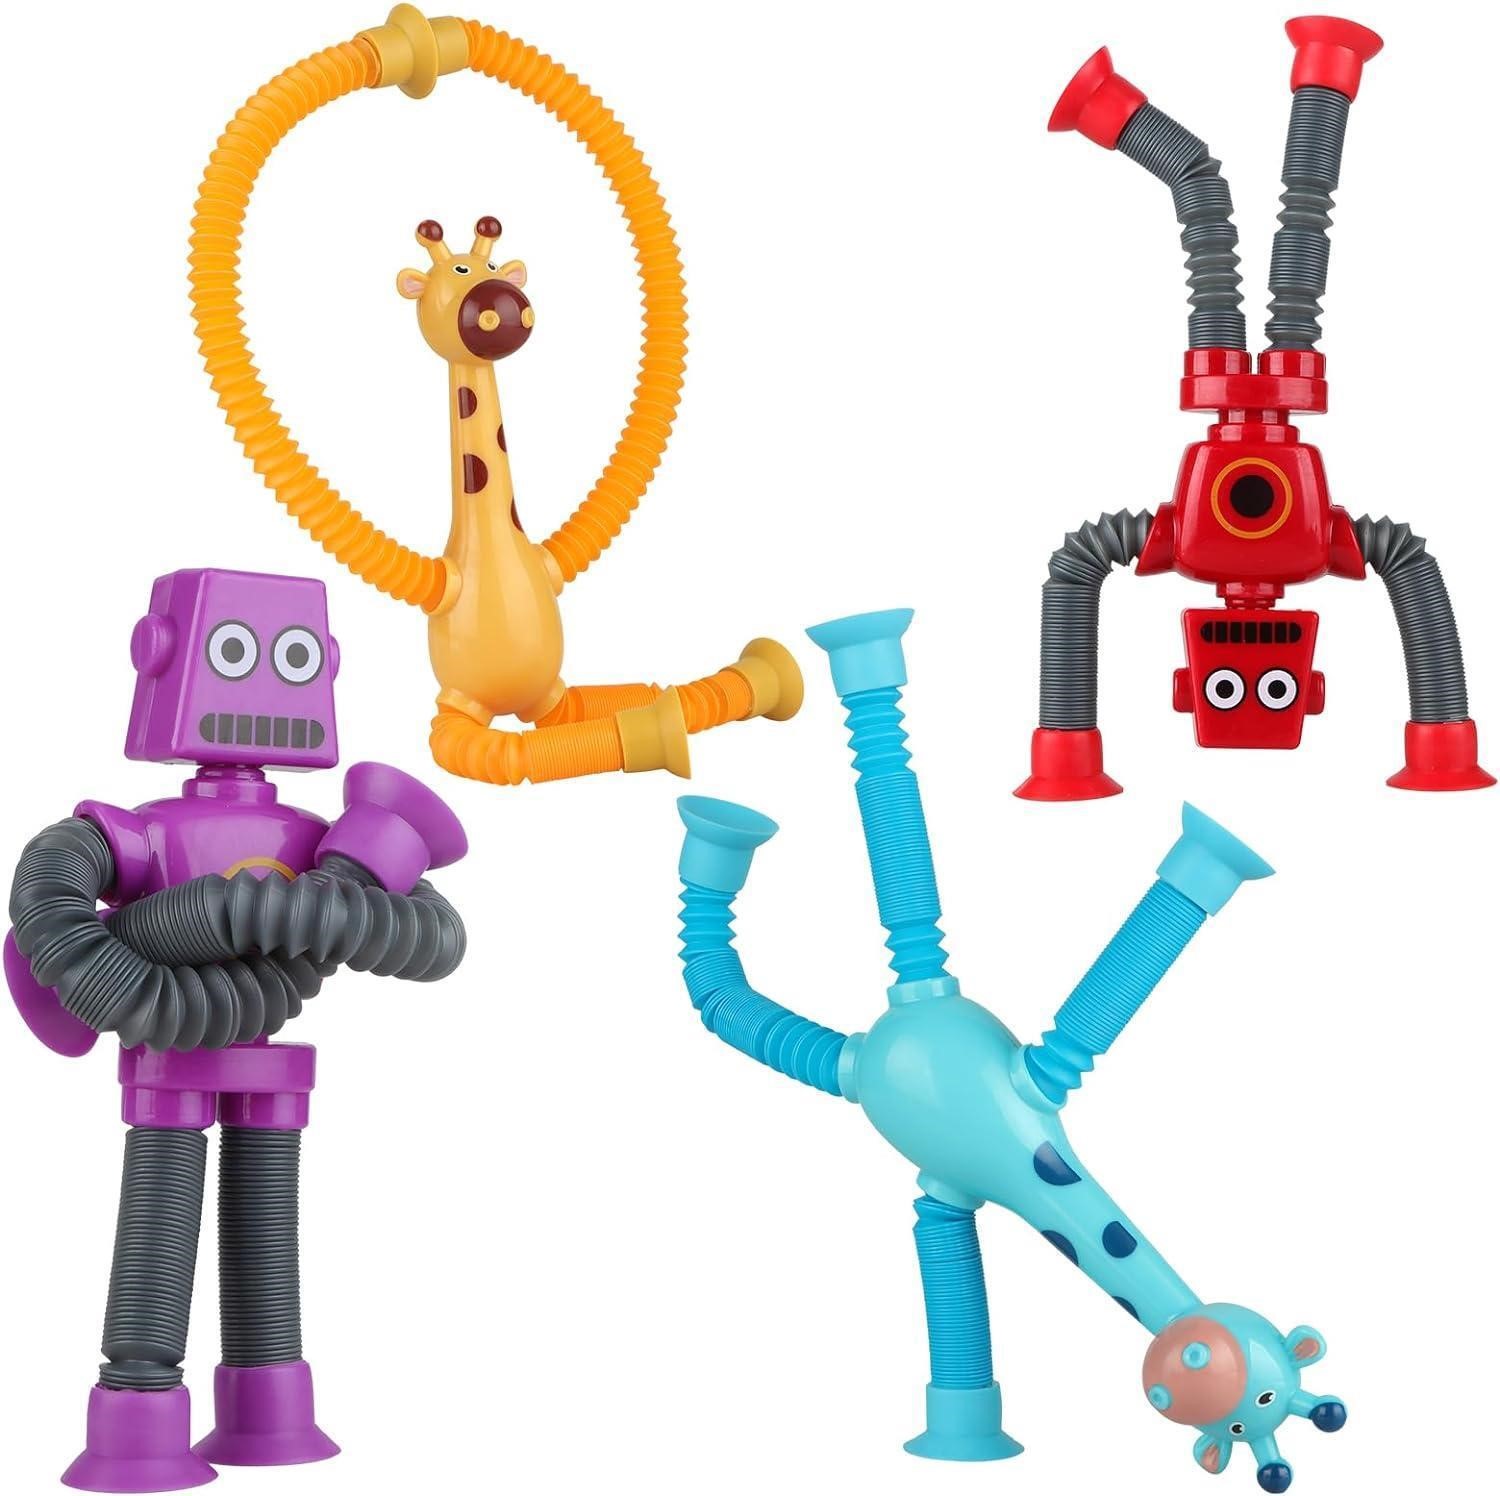 Vofolen 4PCS Giraffe Robot Fidget Toys